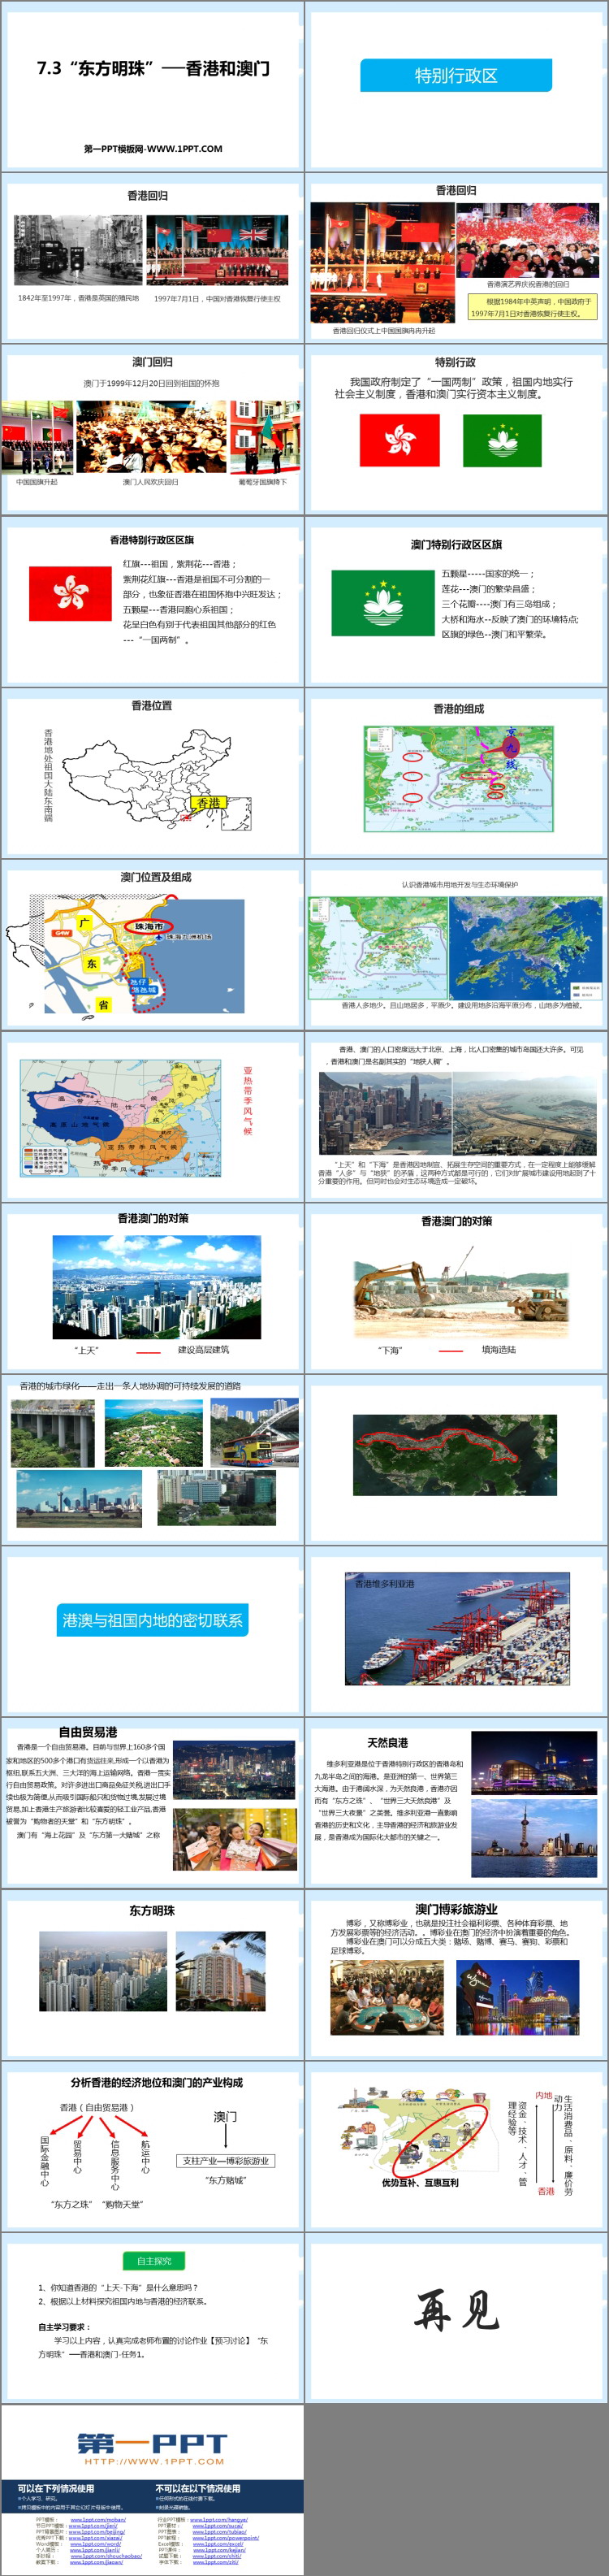 《东方明珠香港和澳门》南方地区PPT教学课件-预览图02